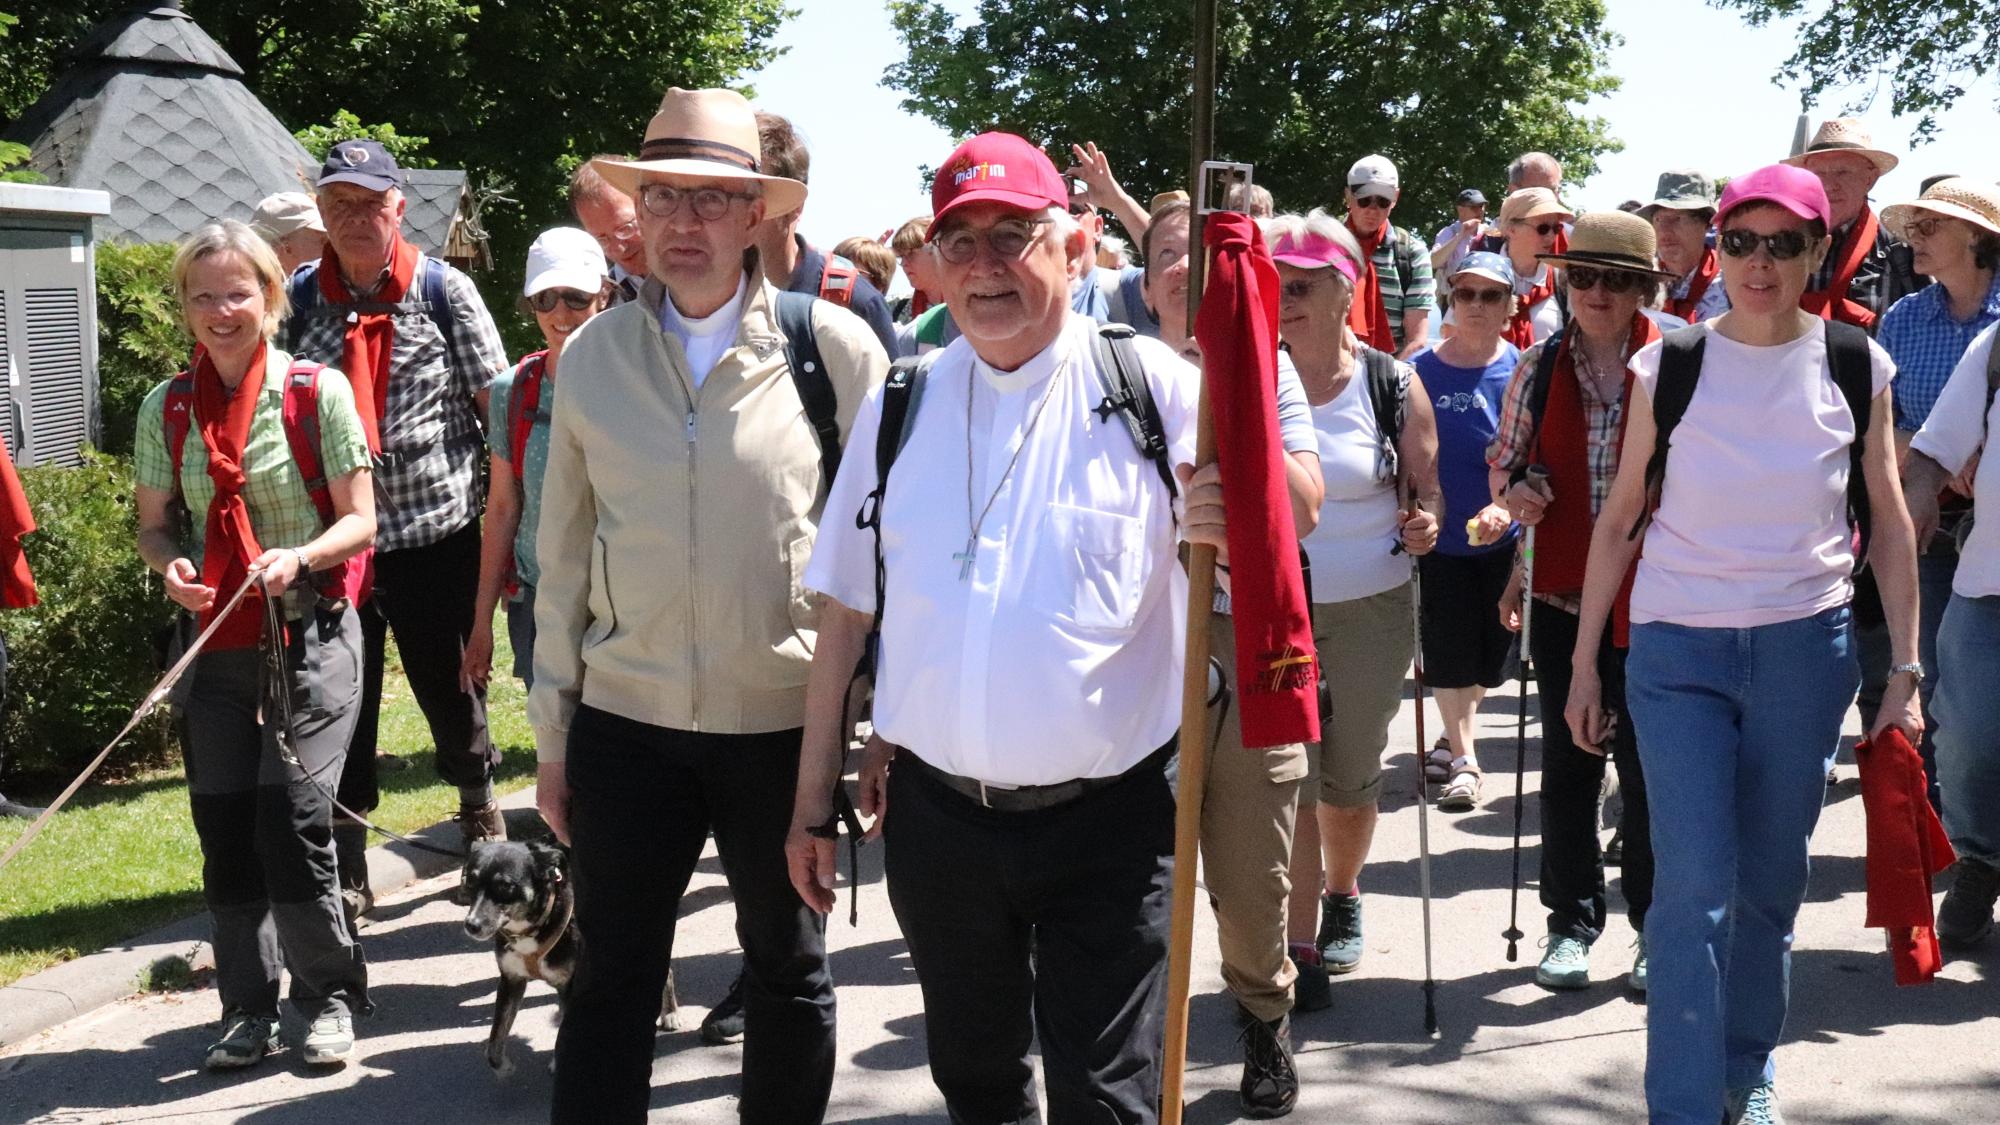 Pilgergruppe beim Aufbruch von der Laubenheimer Höhe in Richtung Mainzer Dom. Mit dabei: Bischof Peter Kohlgraf (links) und Bischof Dr. Gebhard Fürst